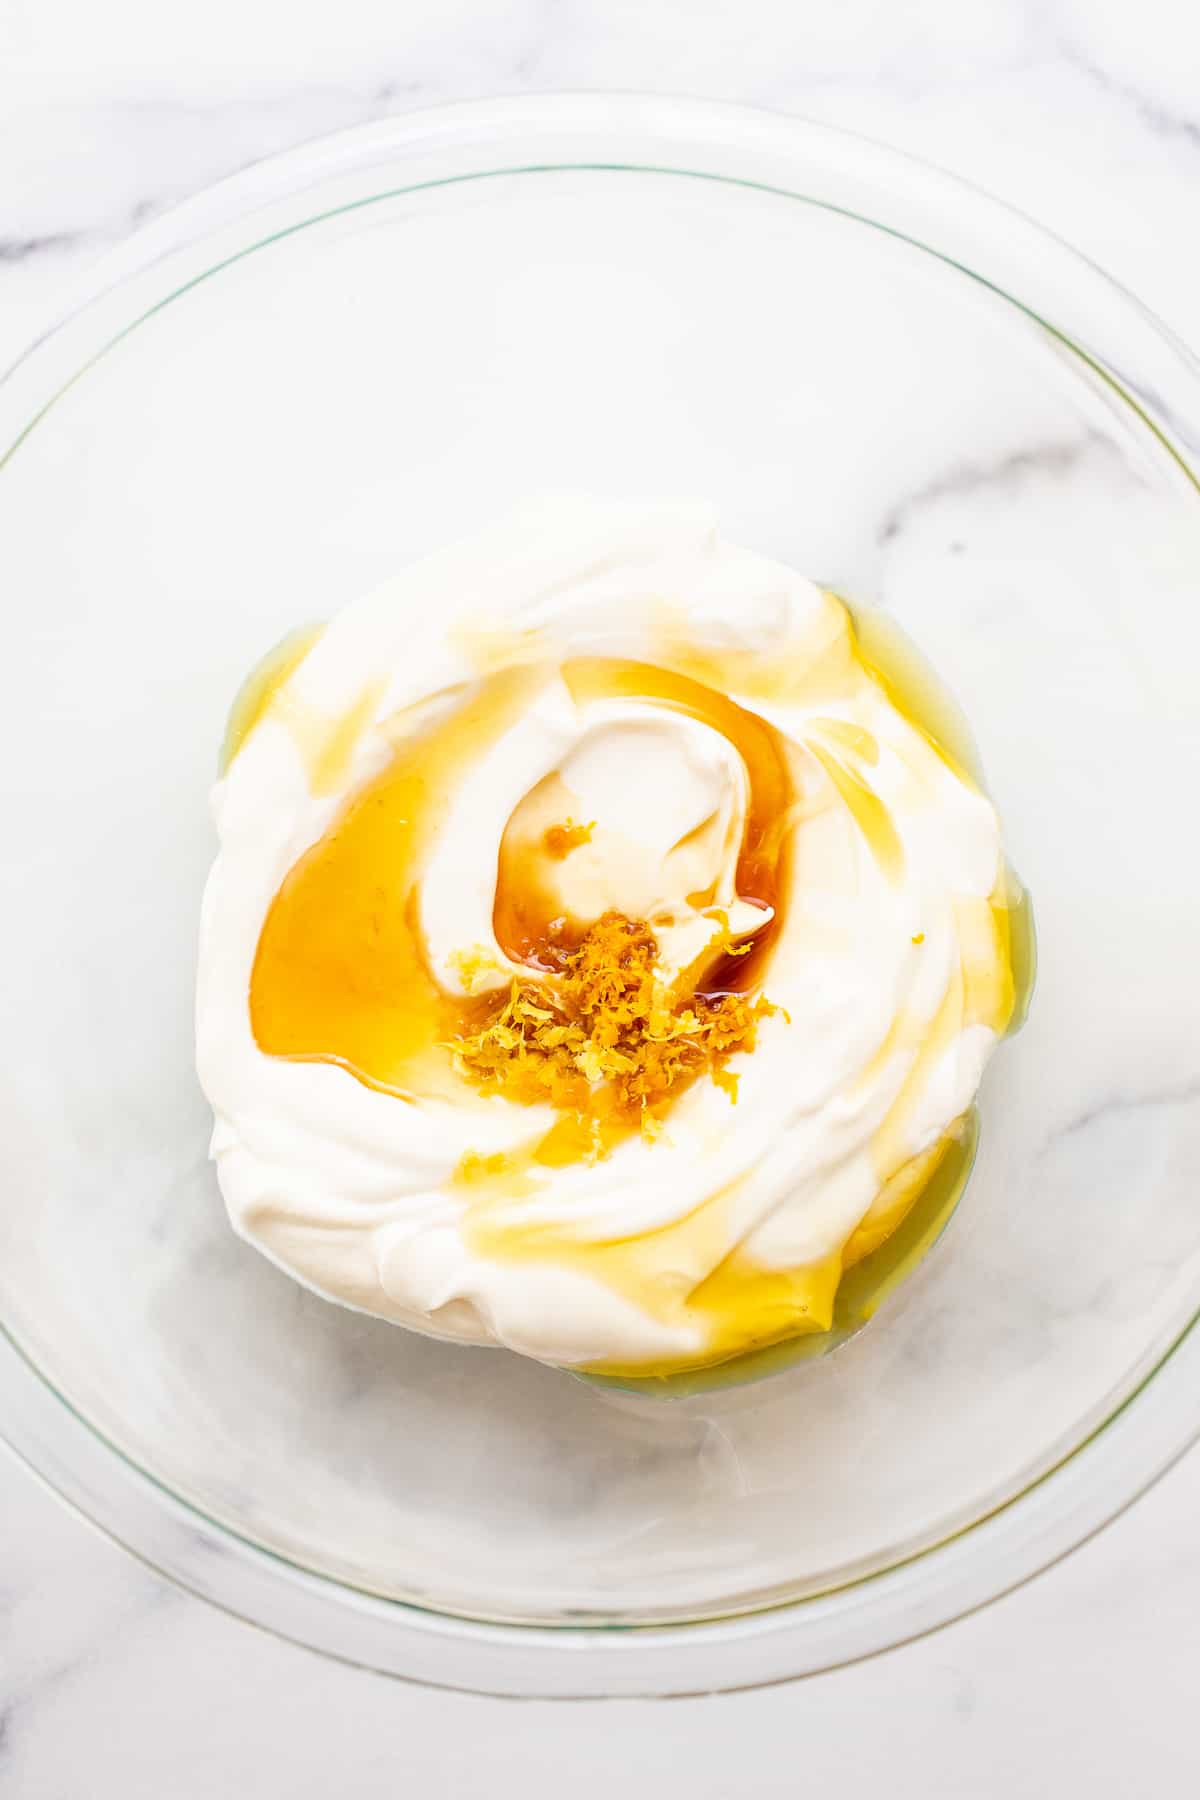 Yogurt greco con miele e scorza di limone in una ciotola.